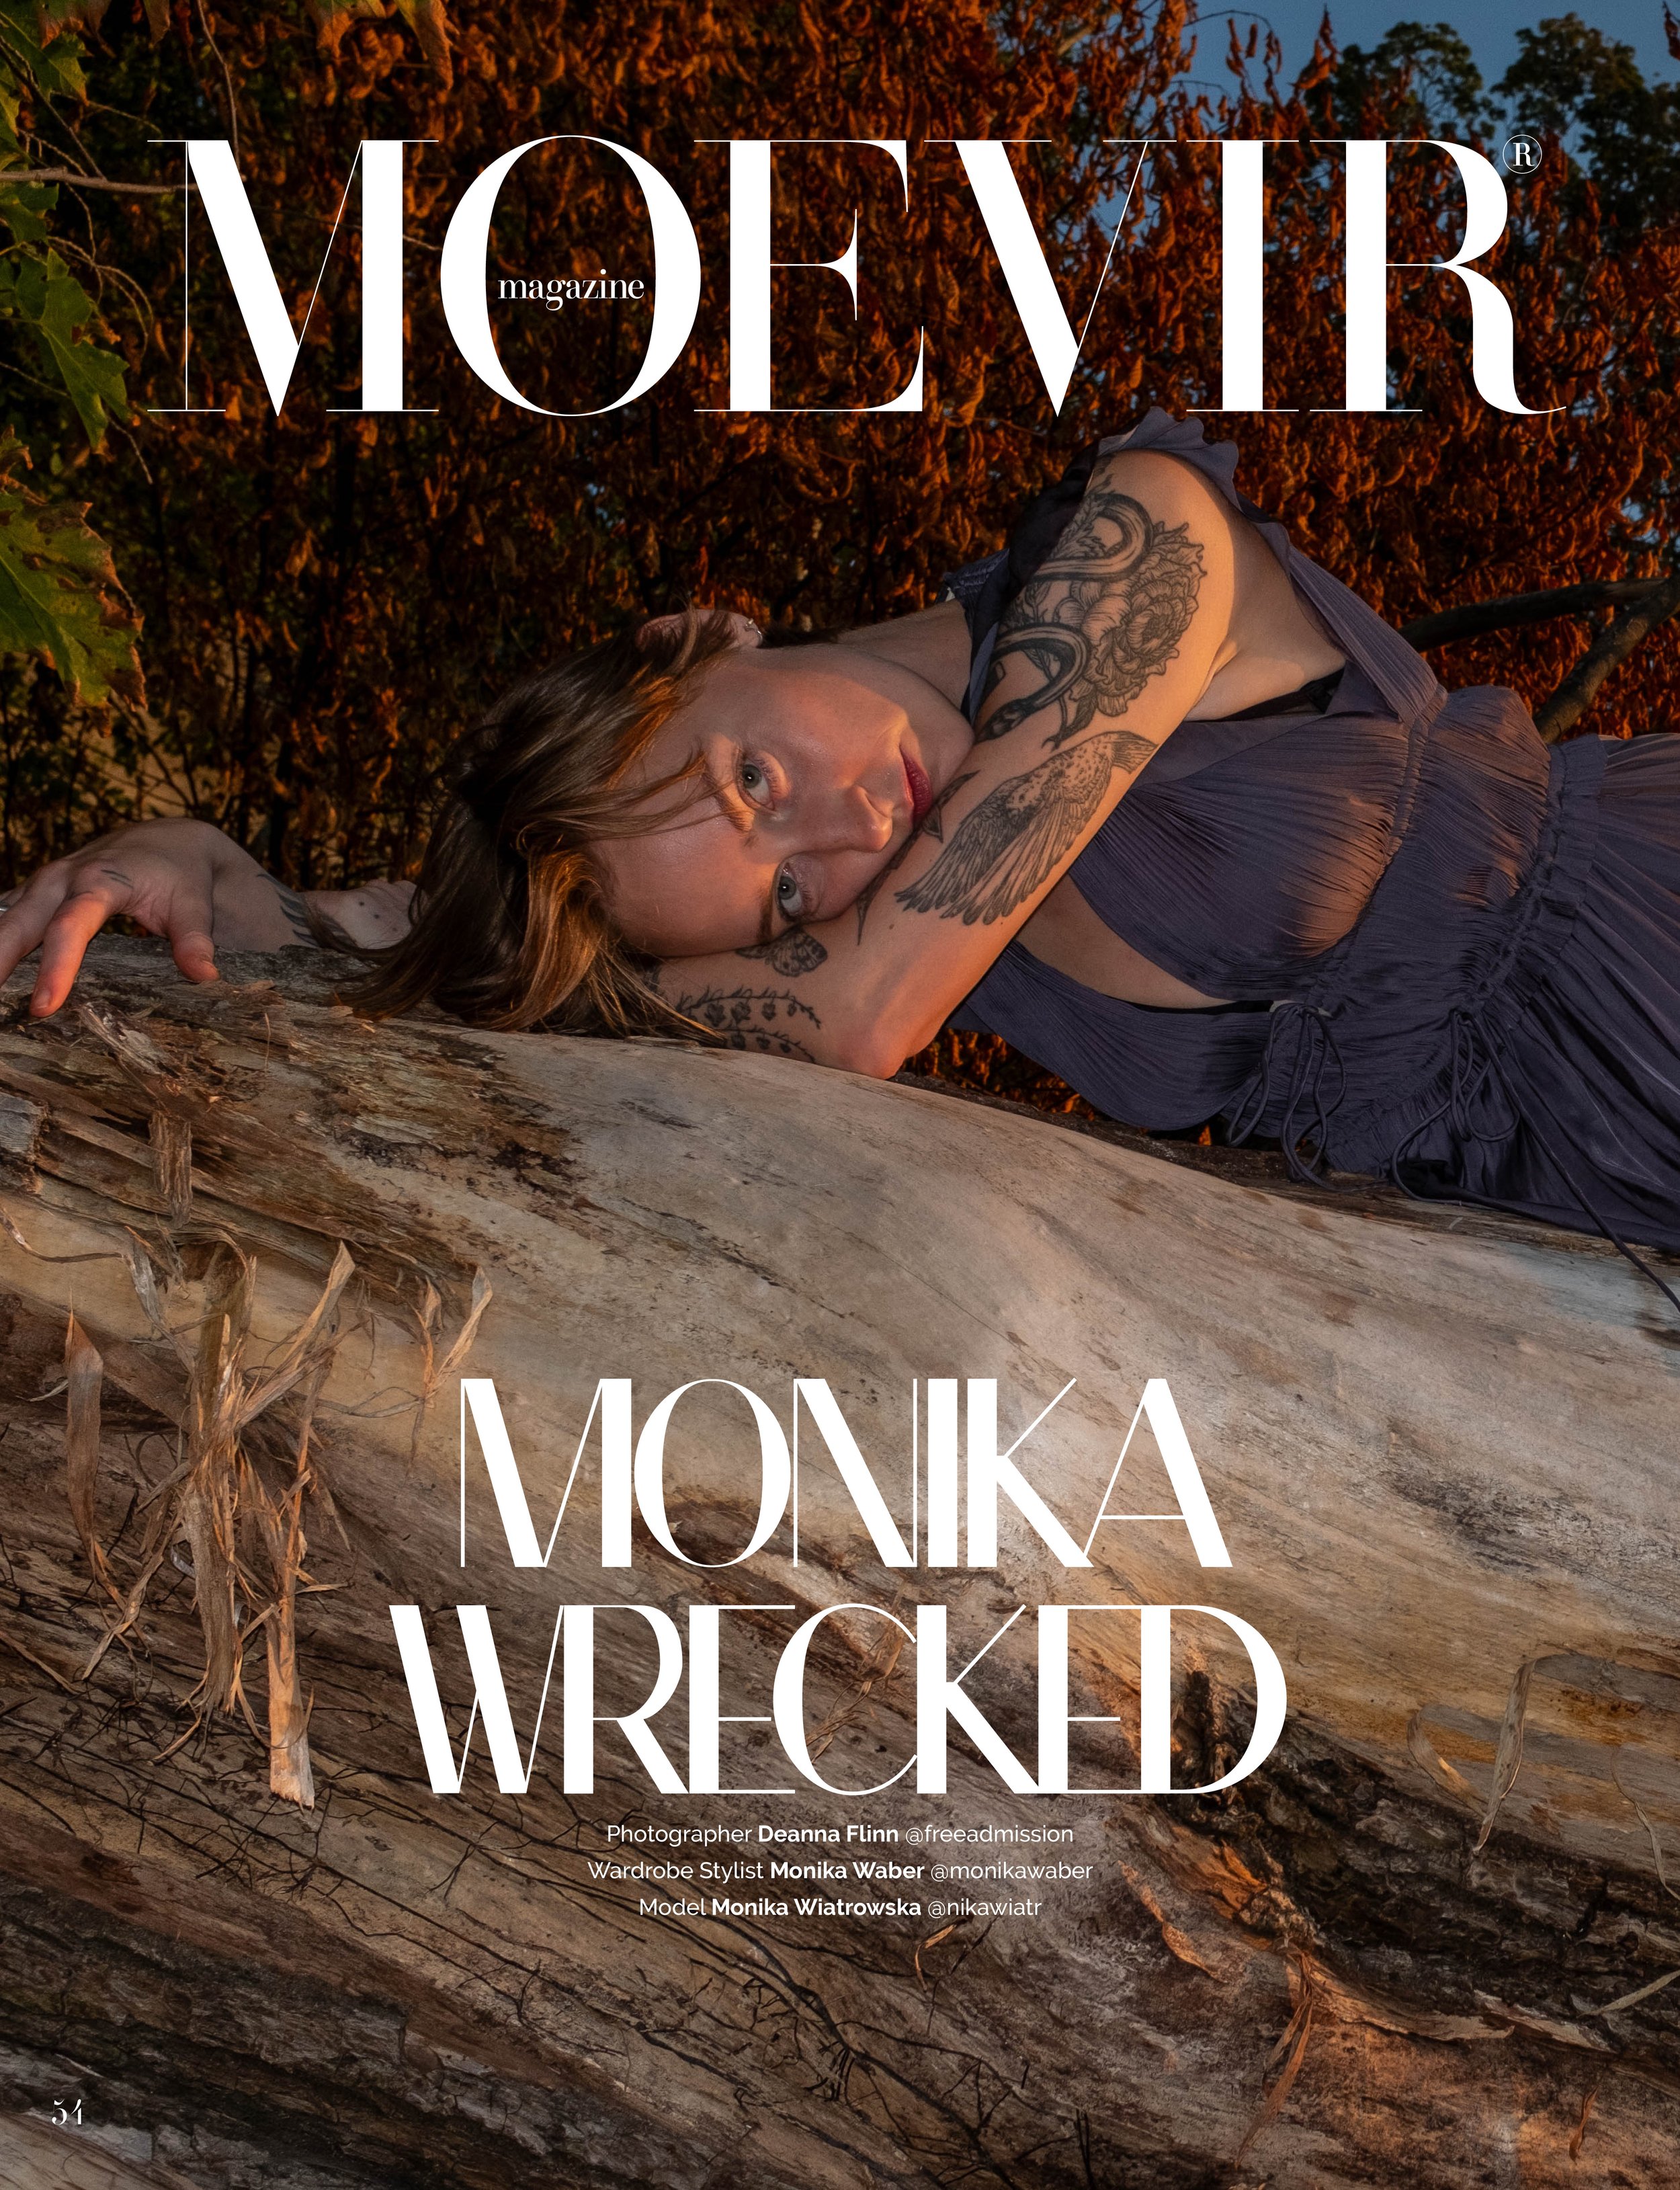 1 Moevir Magazine November Issue 202354.jpg